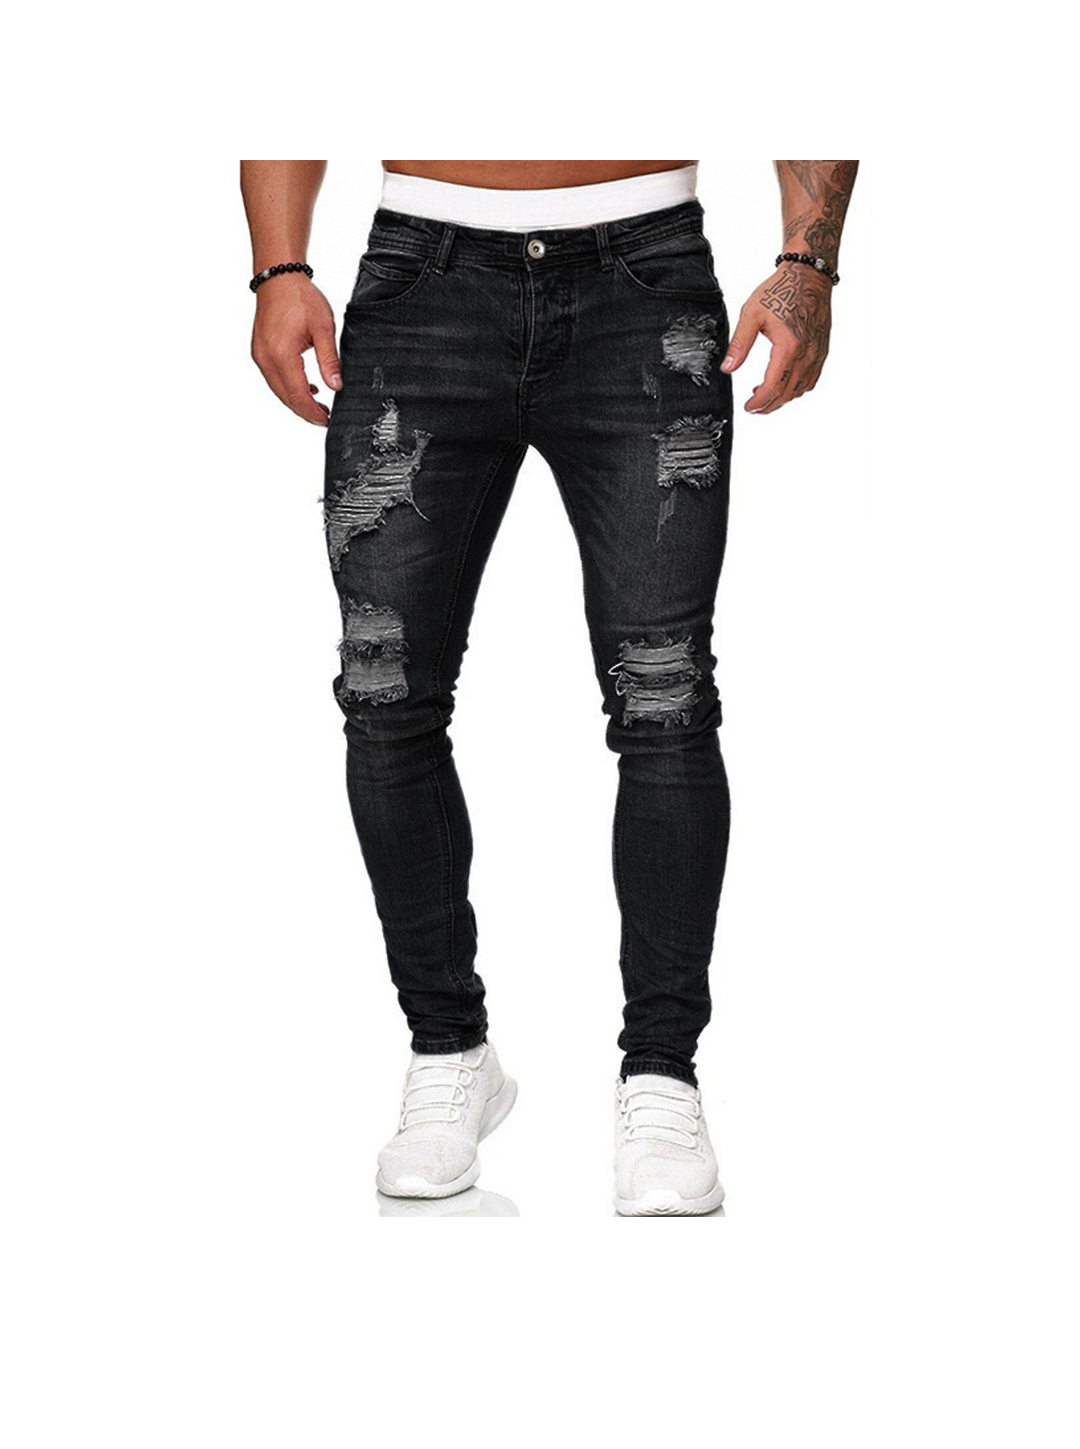 Men's Destroyed Stretch Slim Fit Jeans-poisonstreetwear.com